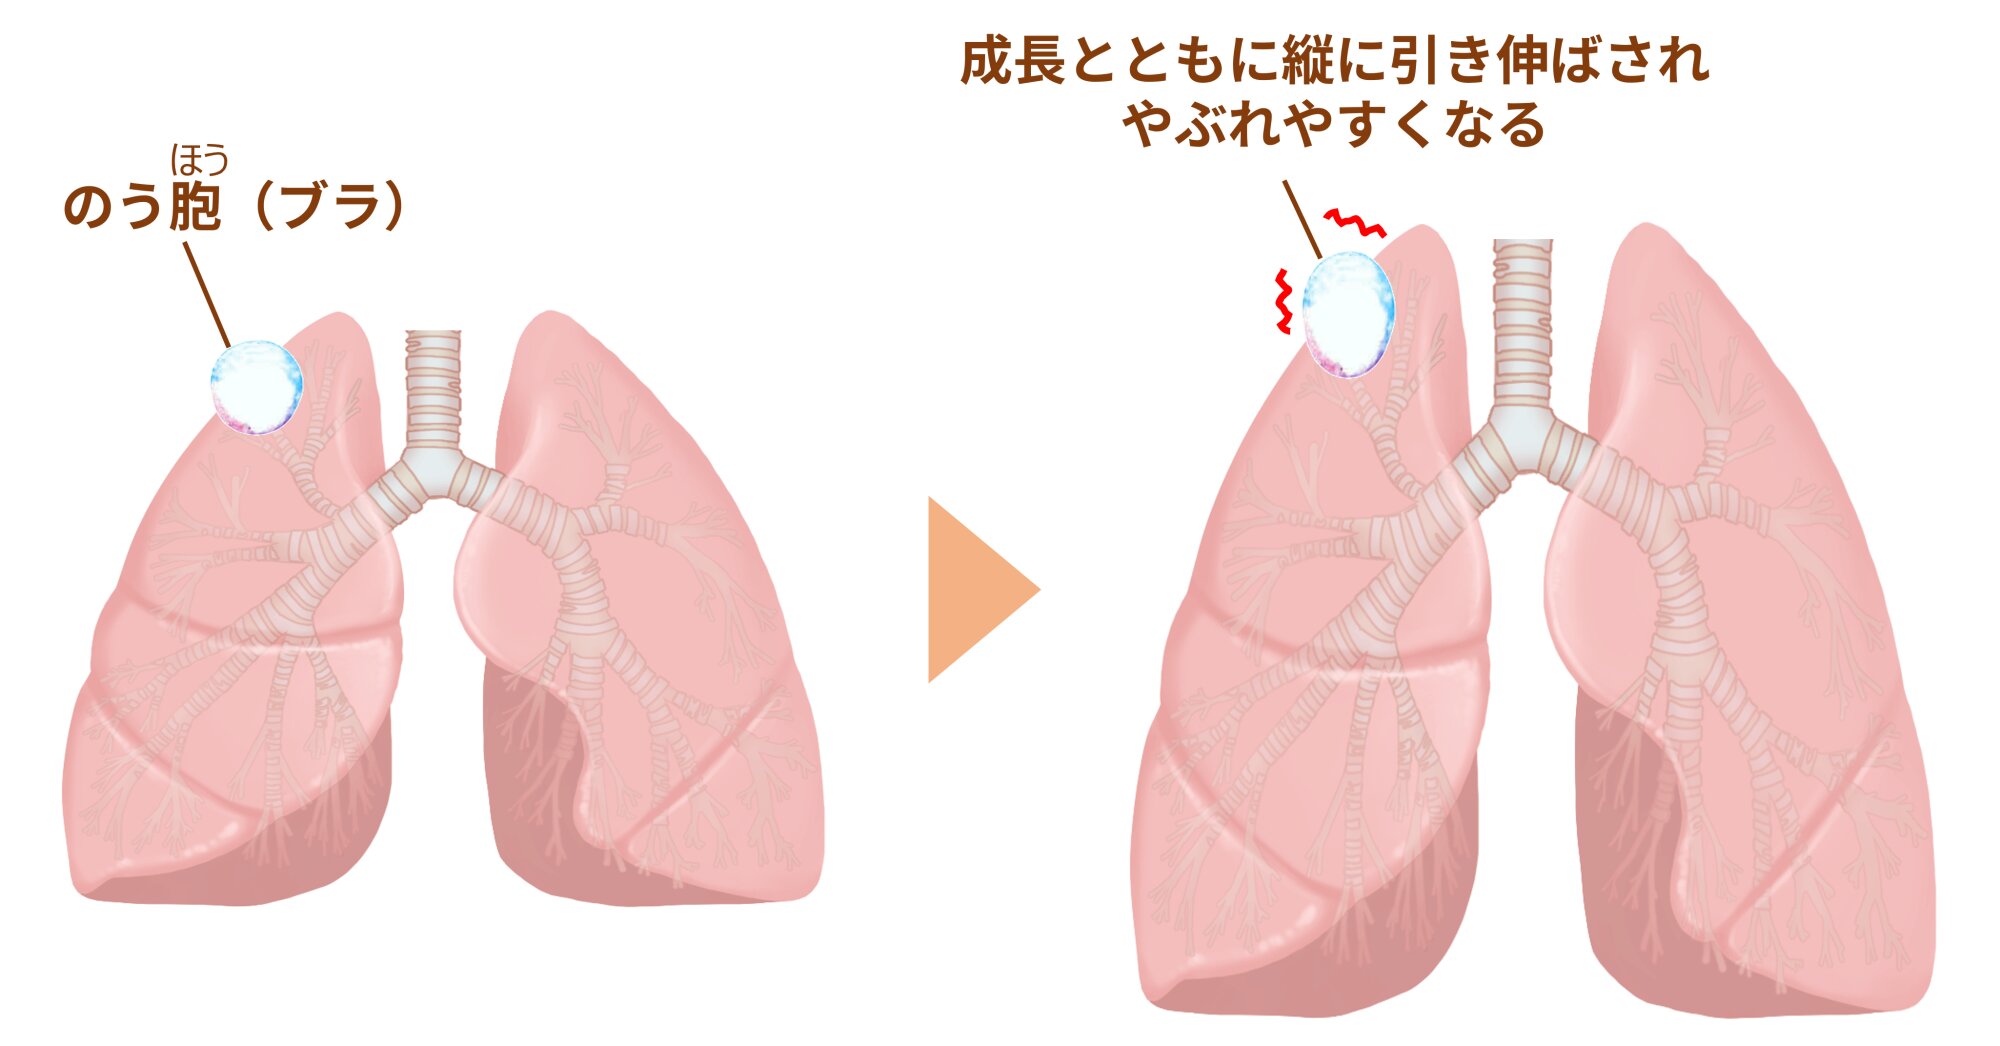 図２．肺にできたのう胞（ブラ）（筆者作成、イラストはイラストＡＣより使用）